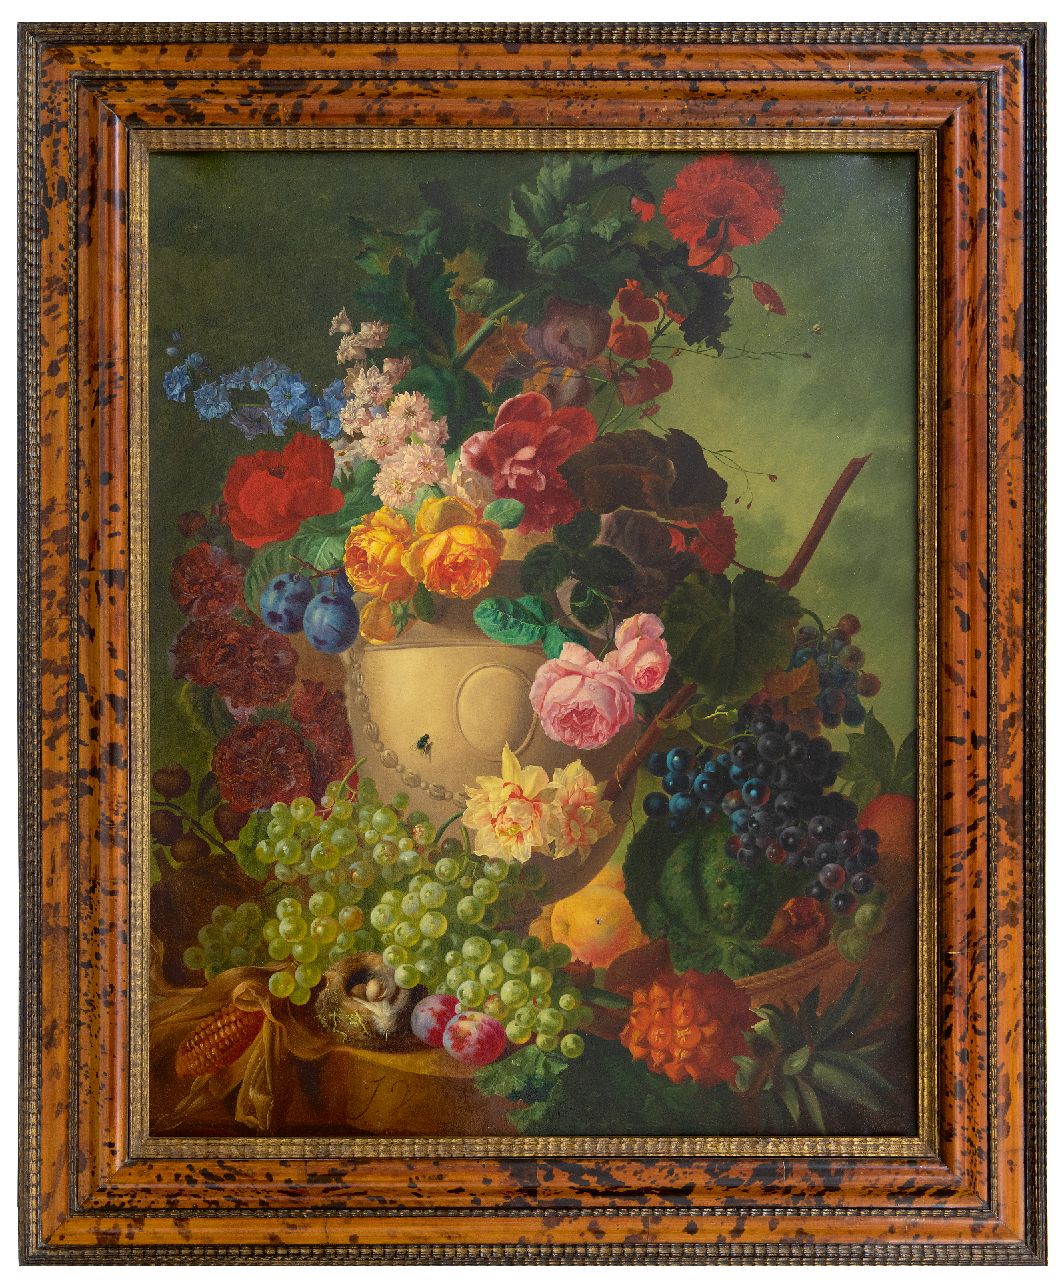 Os J. van | Jan van Os, Stilleven met bloemen, vruchten en een vogelnestje op marmeren plint, olieverf op doek 84,1 x 65,3 cm, gesigneerd linksonder